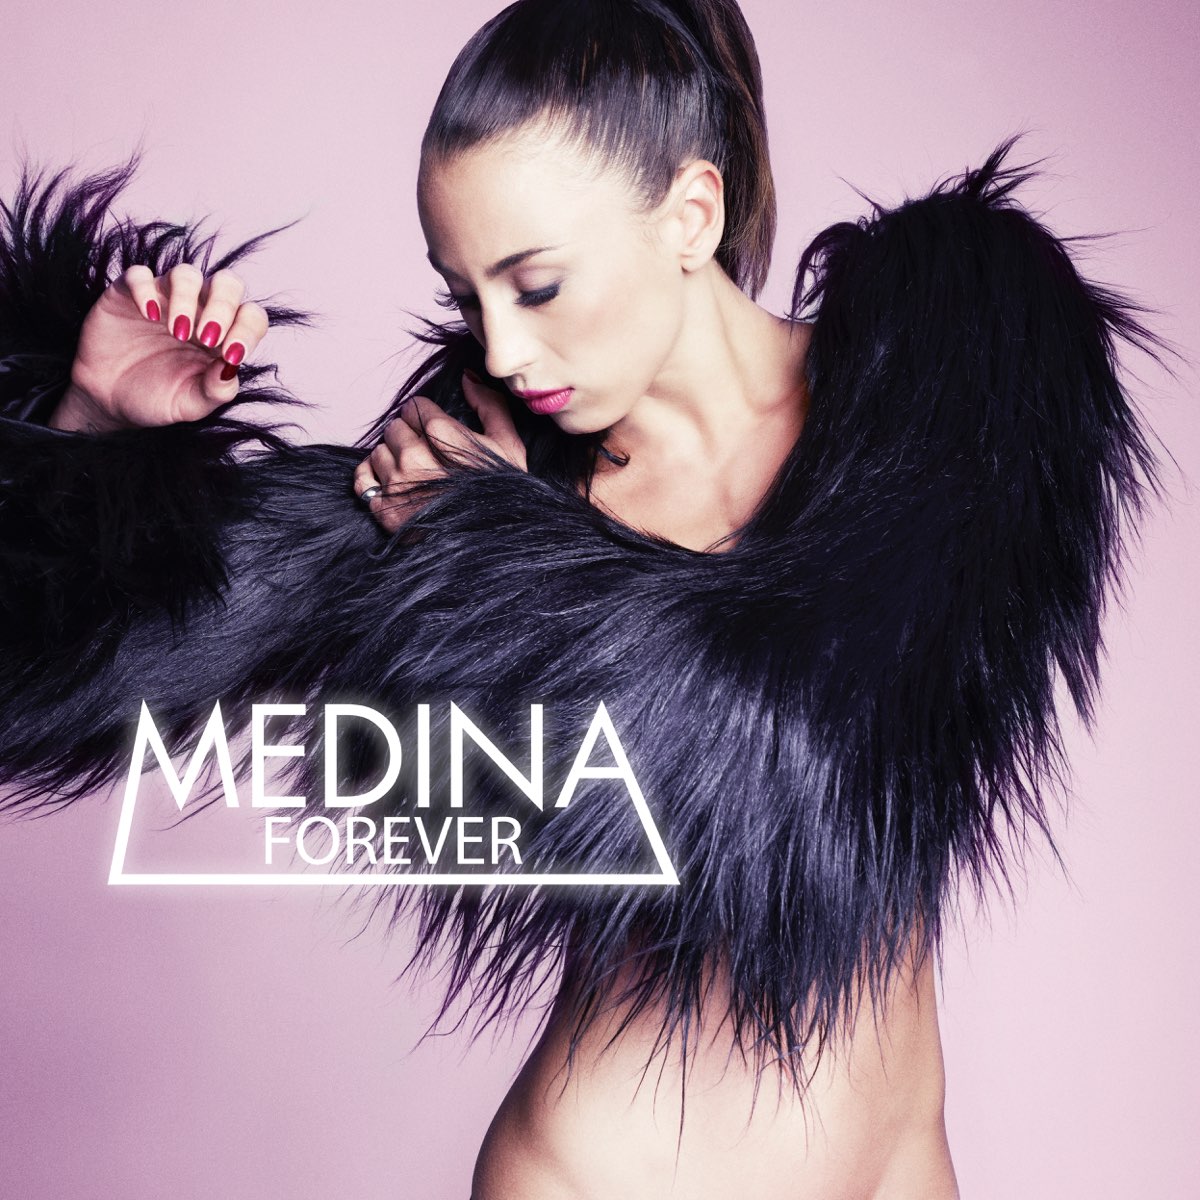 Medina Forever cover artwork